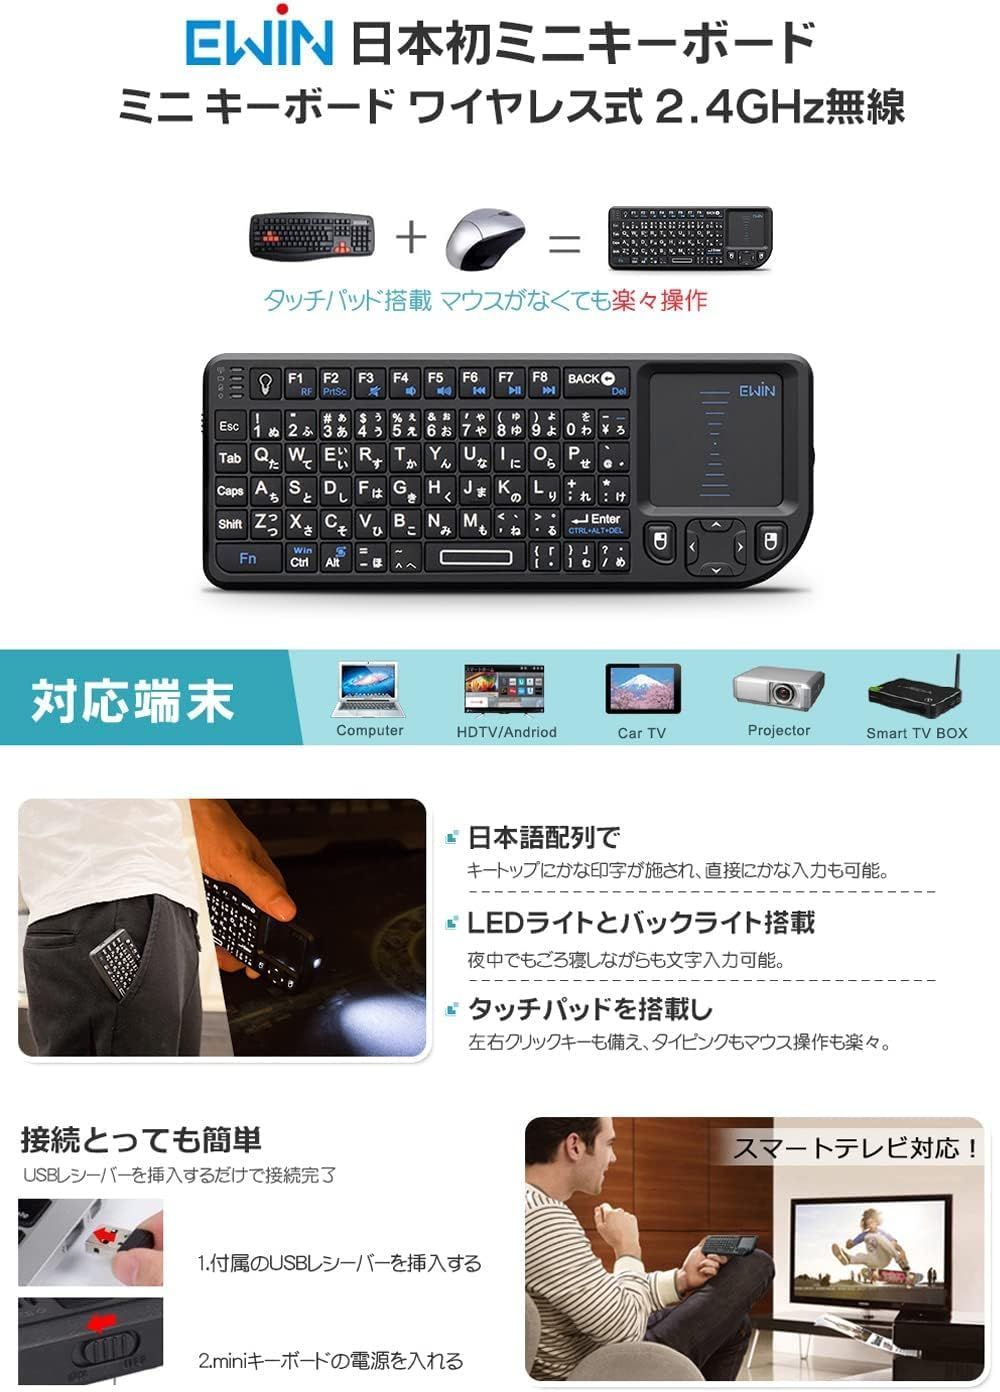 Ewin ミニ キーボード ワイヤレス 2.4GHz - PC/タブレット